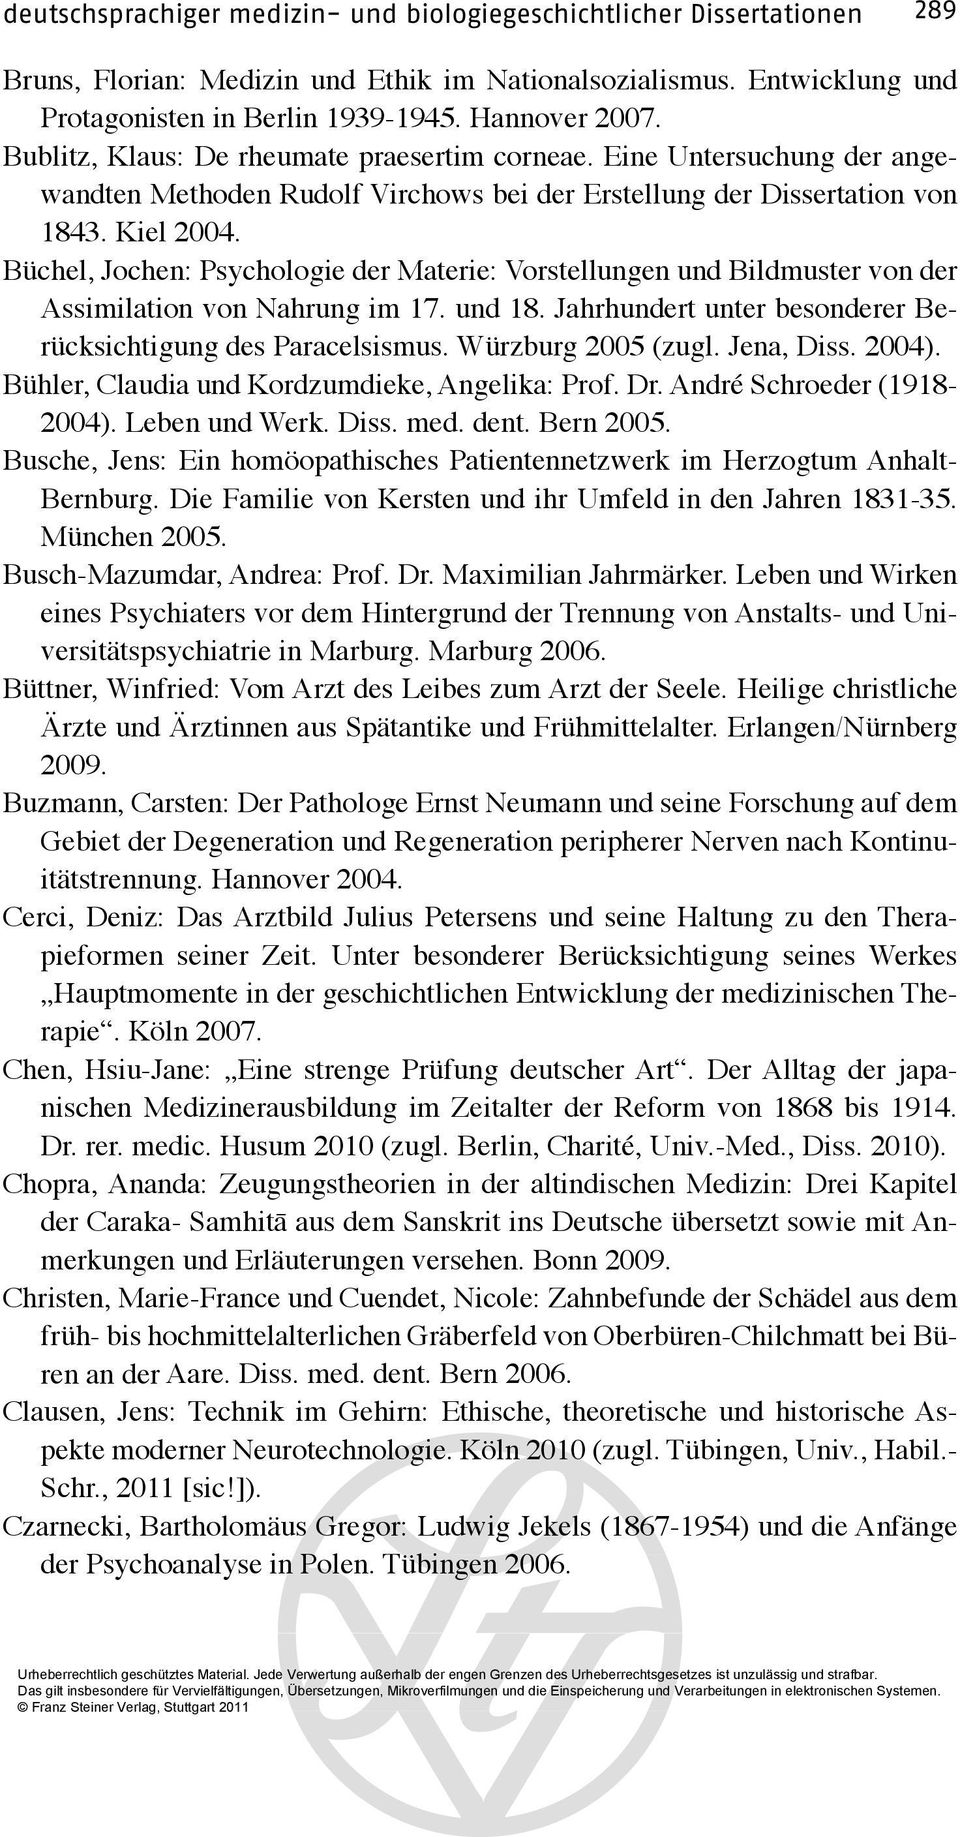 Büchel, Jochen: Psychologie der Materie: Vorstellungen und Bildmuster von der Assimilation von Nahrung im 17. und 18. Jahrhundert unter besonderer Berücksichtigung des Paracelsismus.